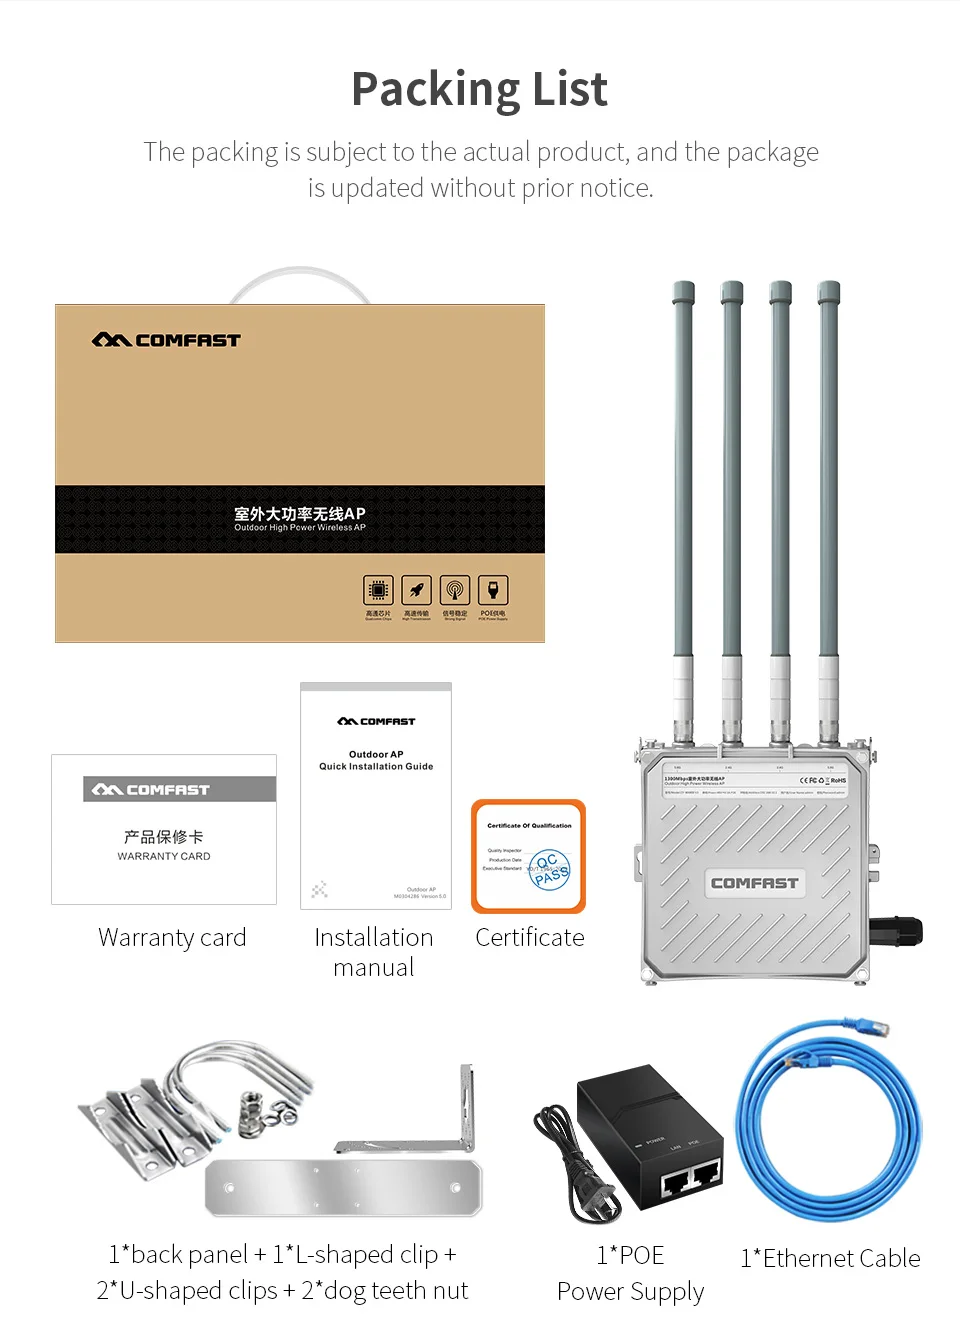 Высокая мощность CF-WA800-V3 5 ГГц двухдиапазонный открытый беспроводной AP 1300 м гигабитный Wi-Fi Ethernet POE 4 Внешняя антенна базовая станция